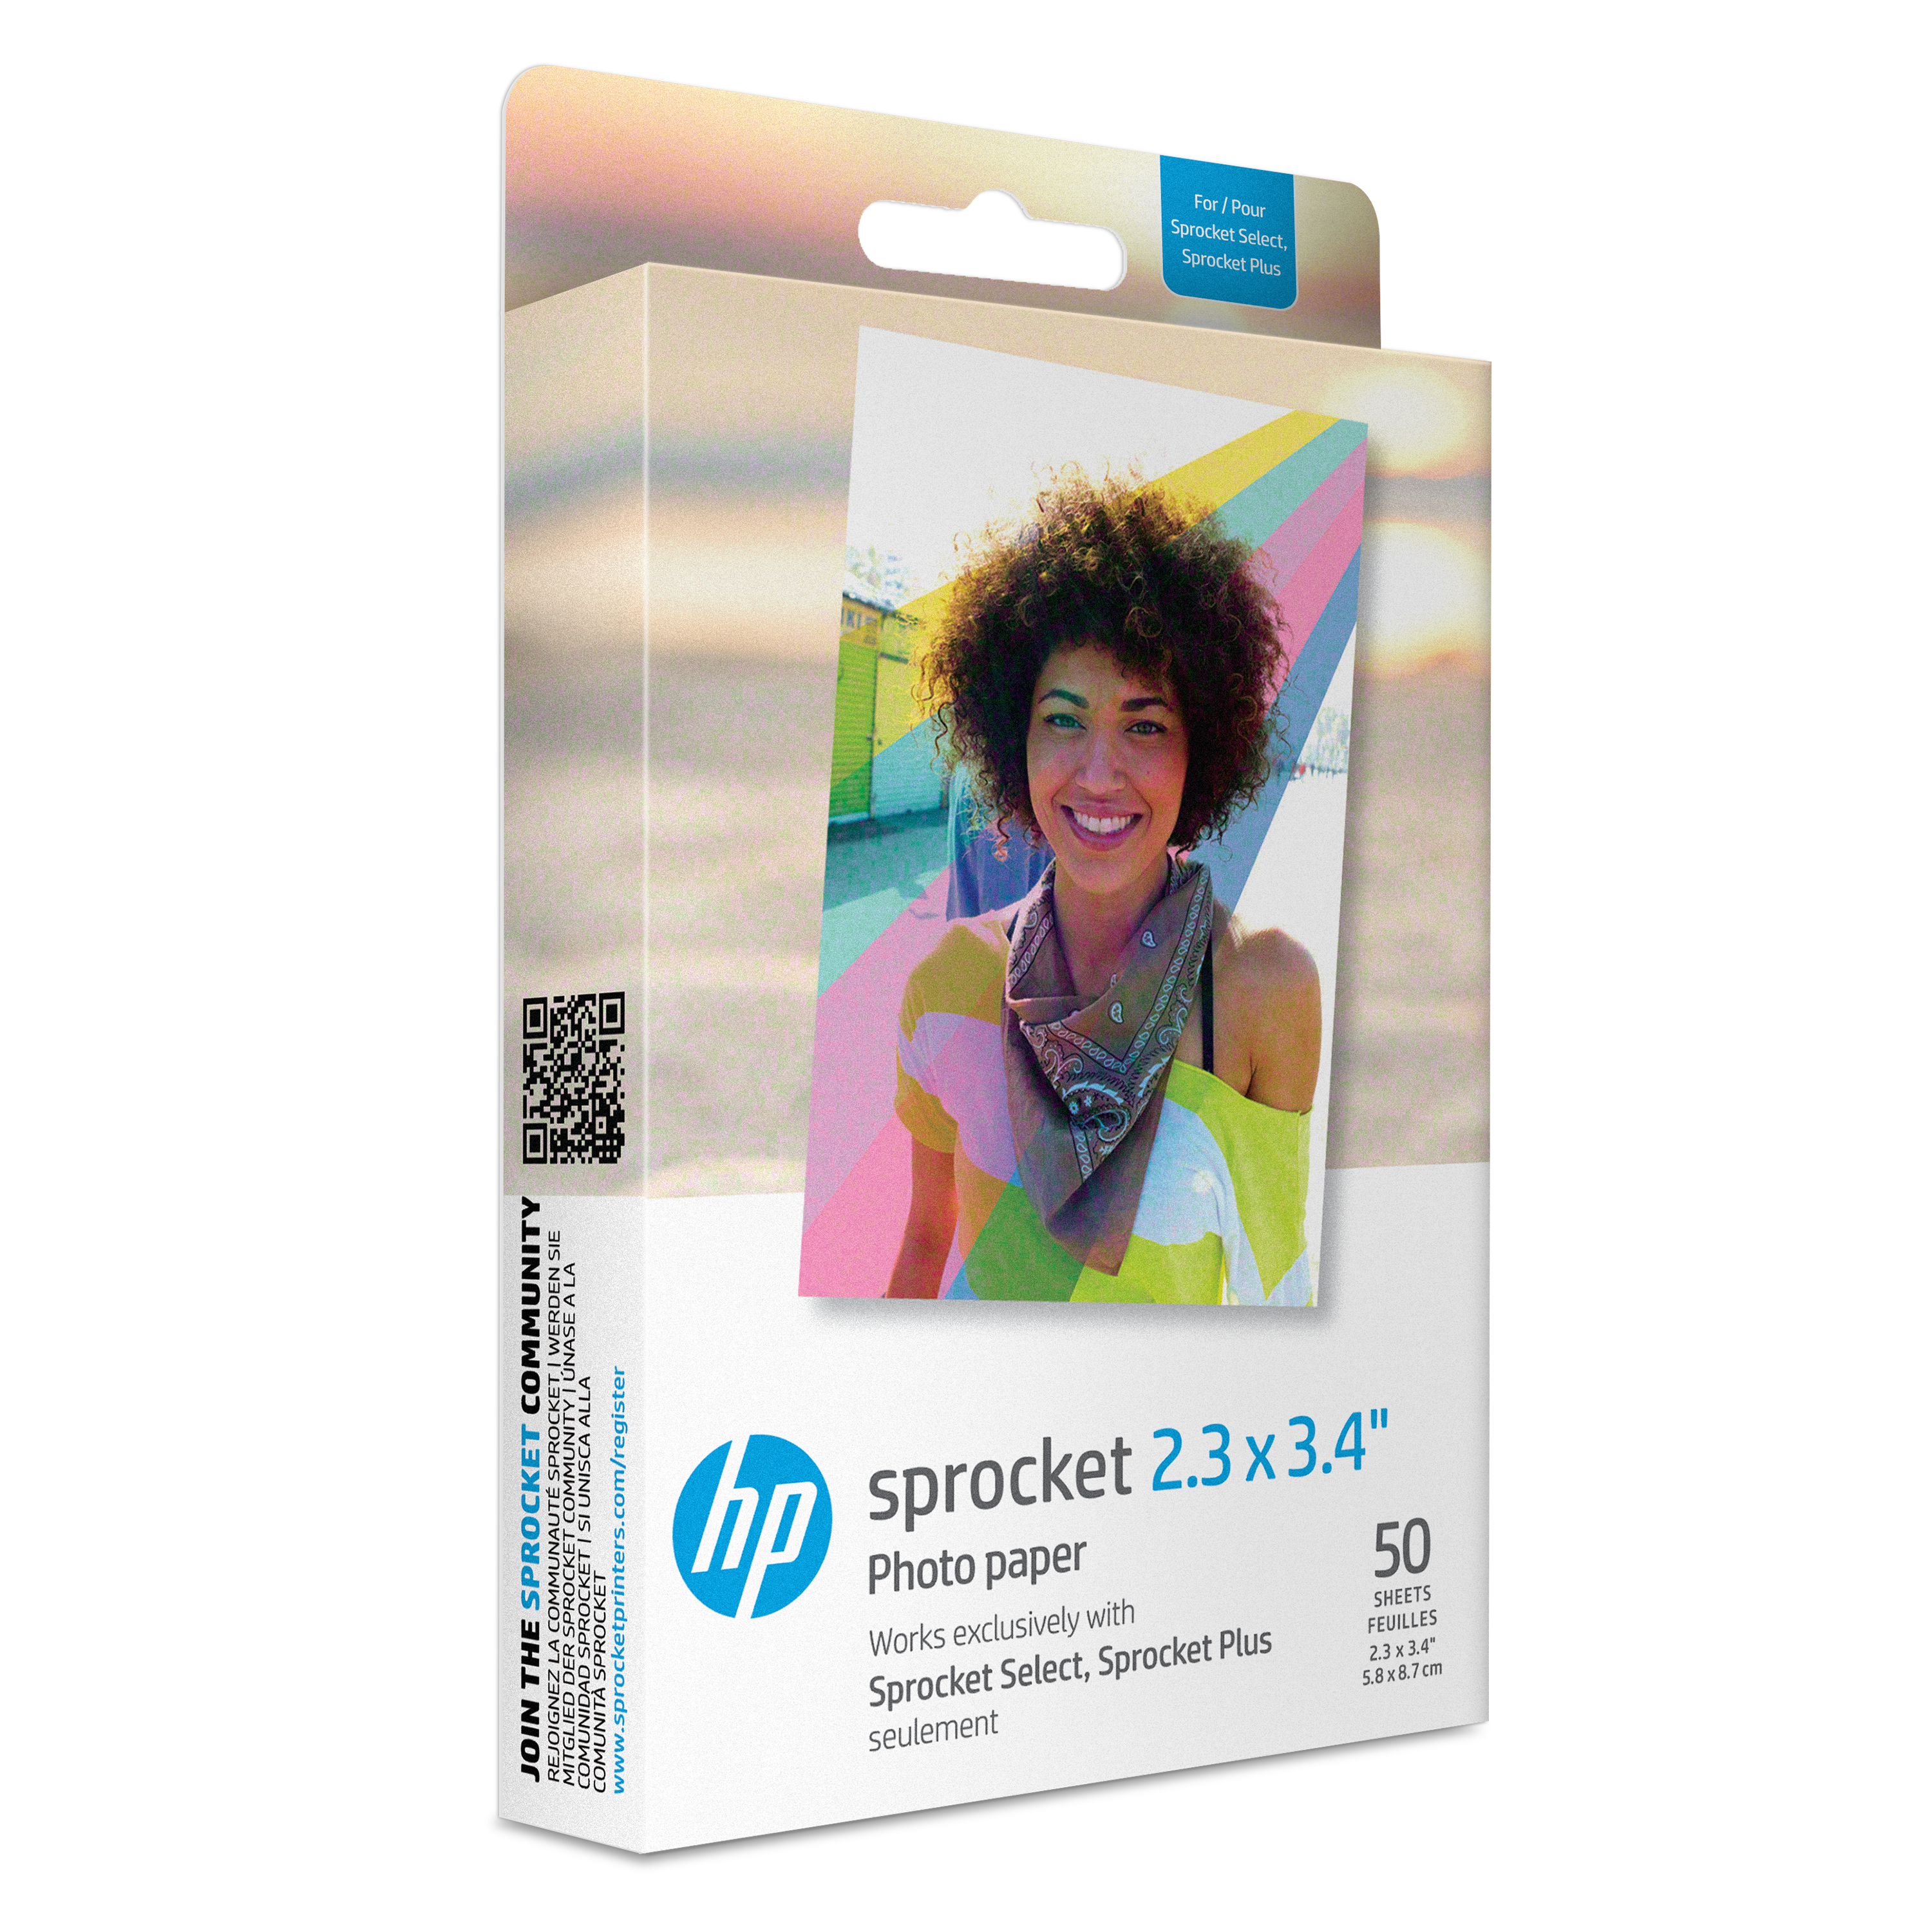 HP Sprocket Zink Lot de 50 feuilles de papier photo à dos adhésif